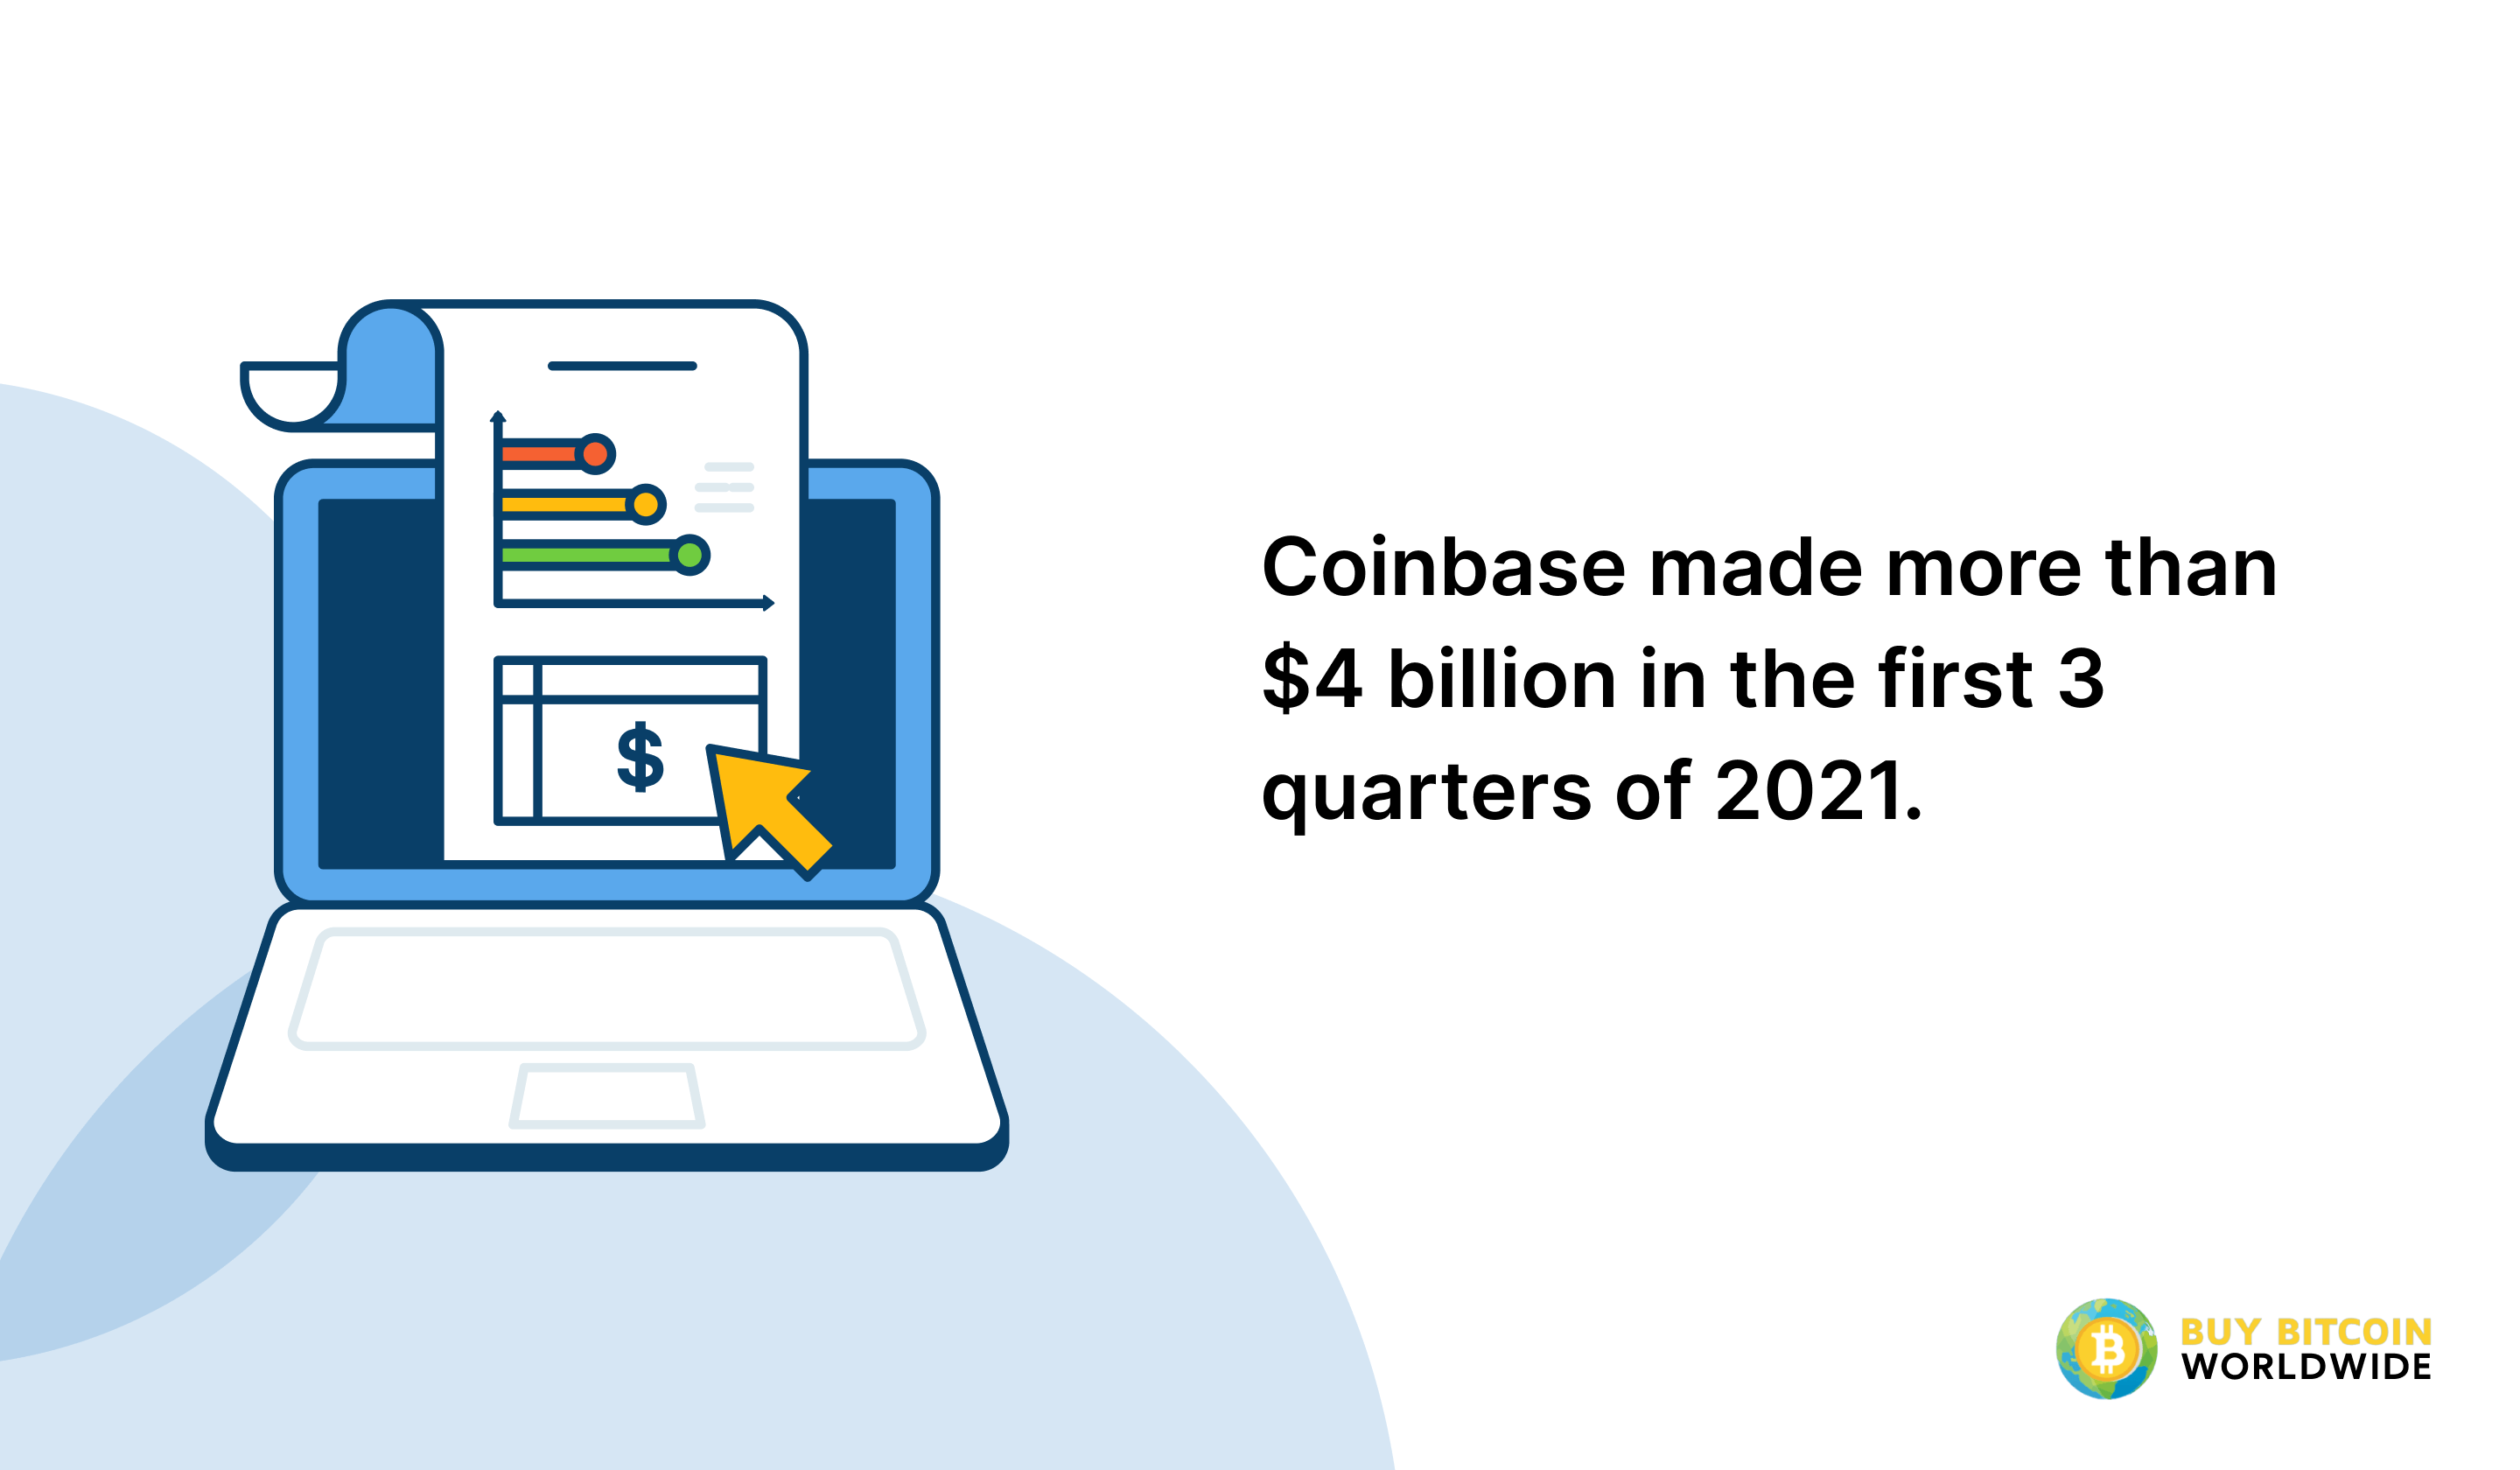 coinbase revenue in 2021